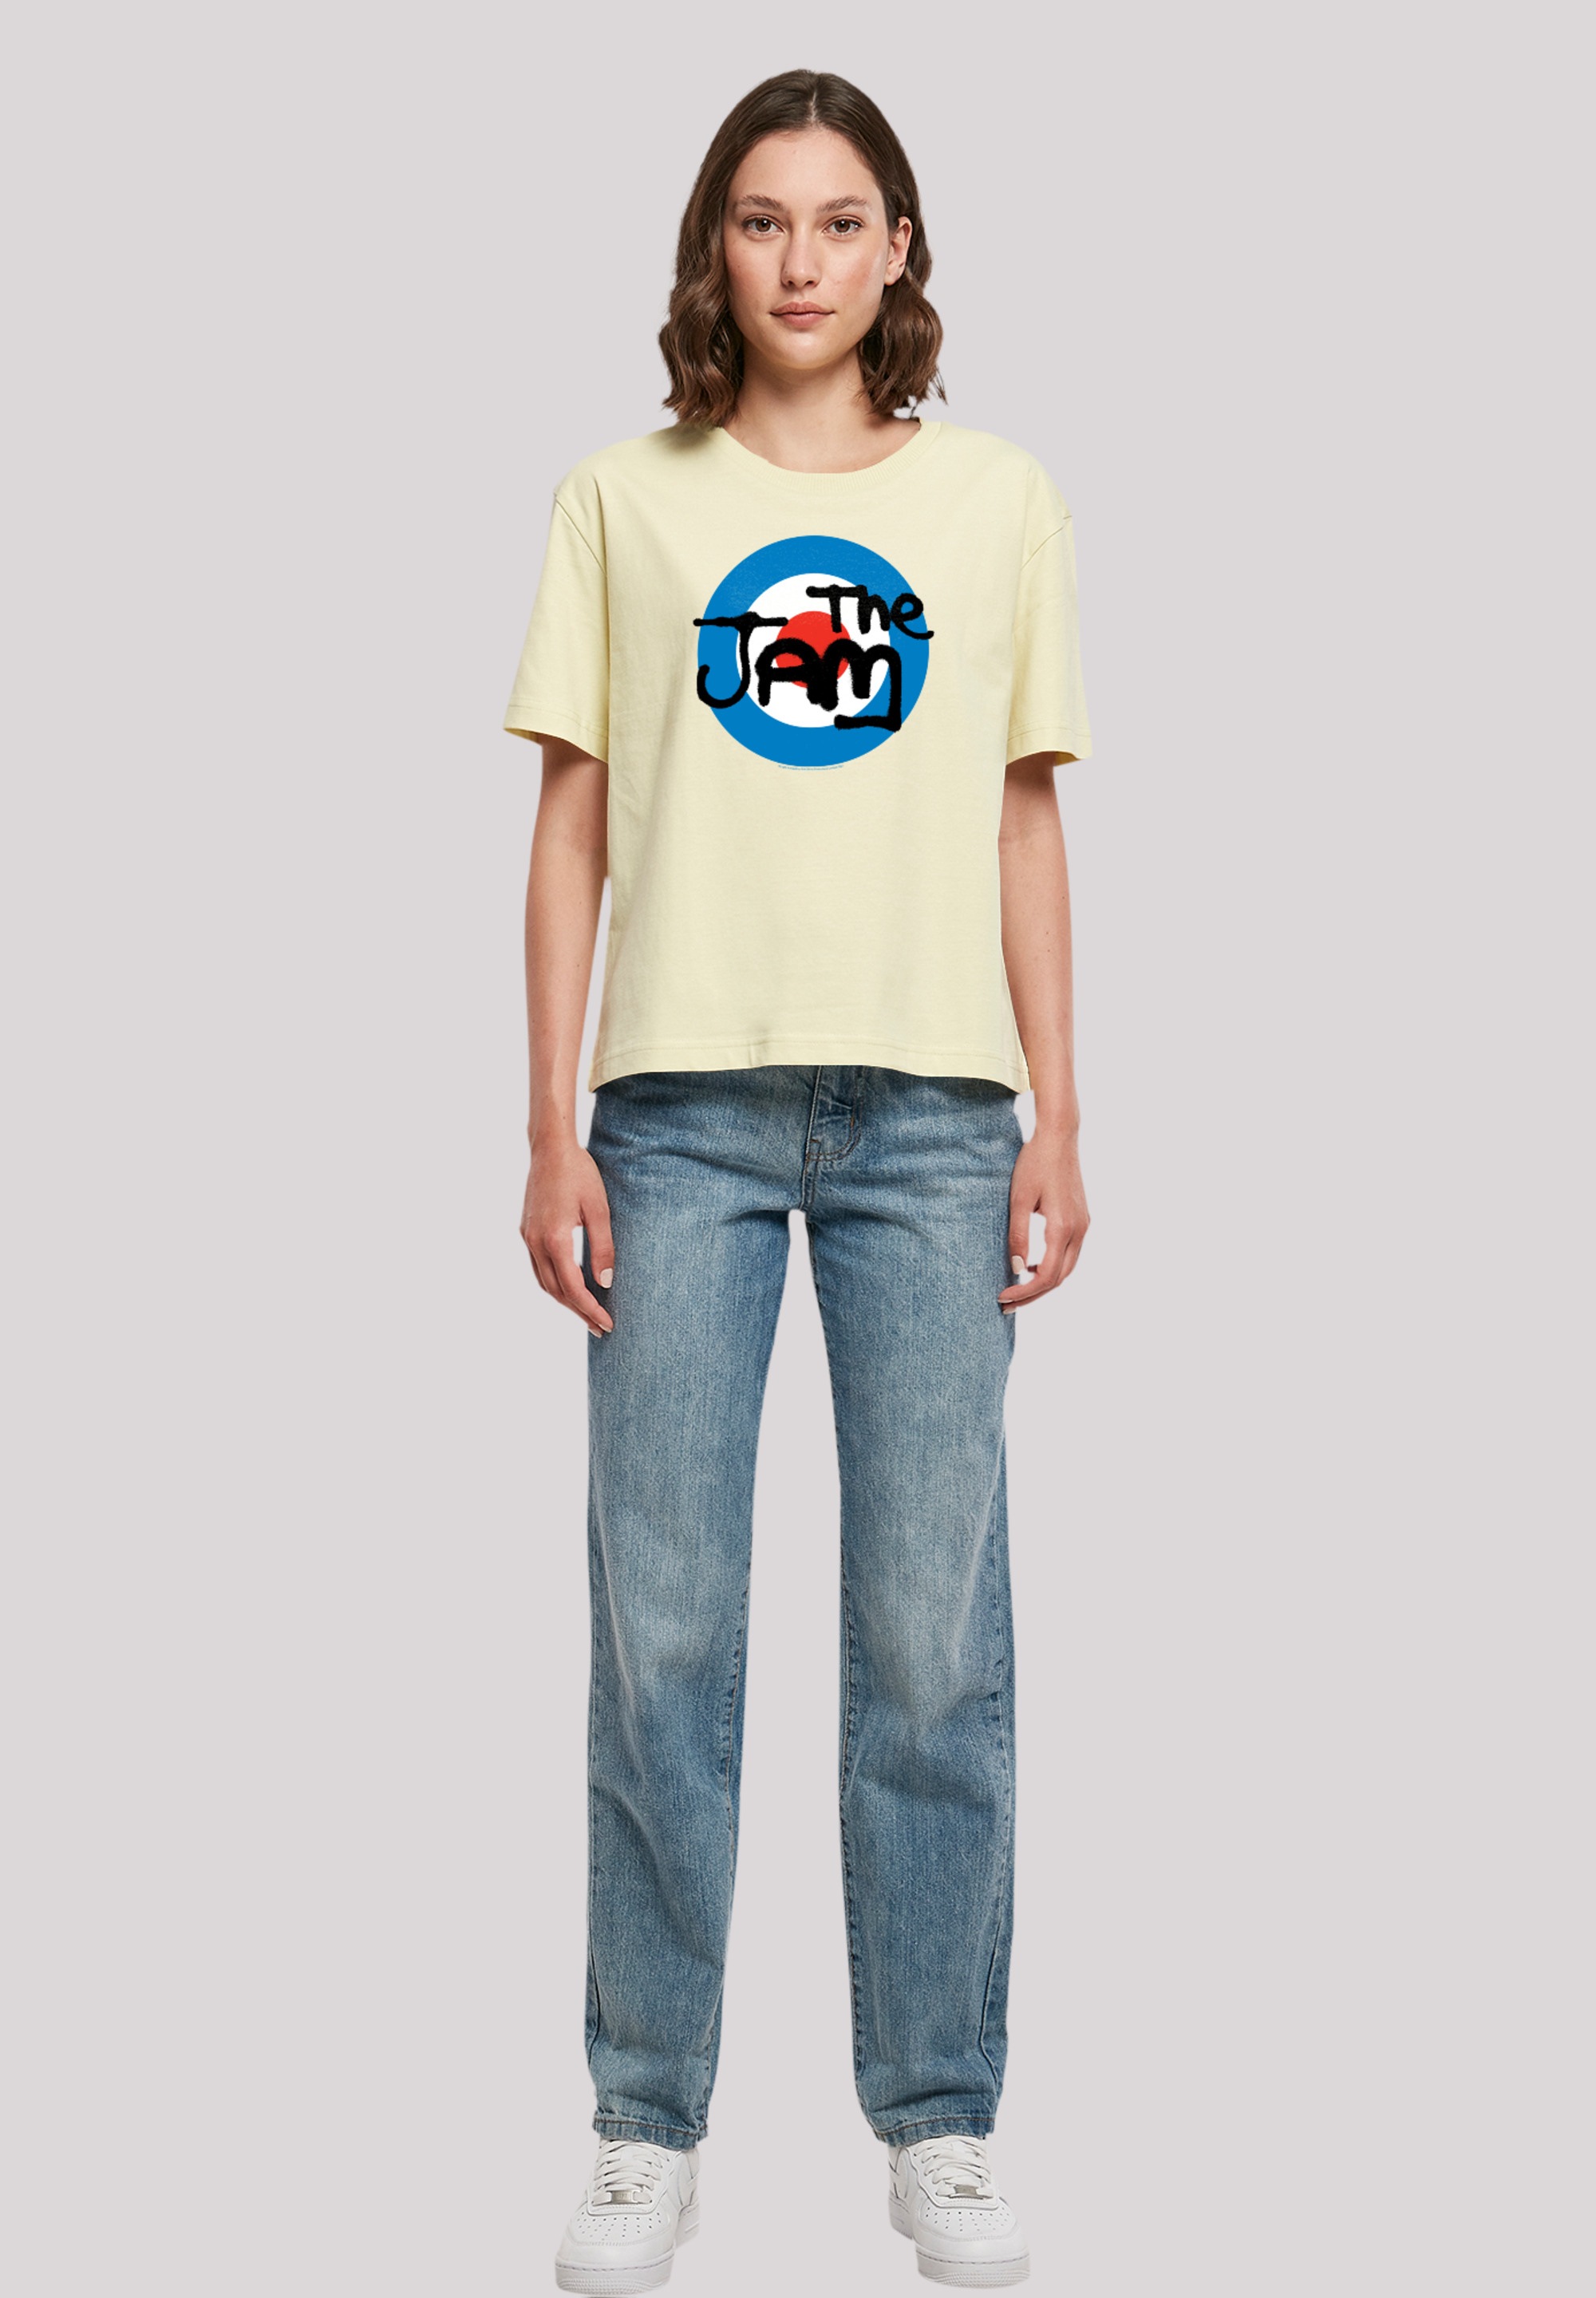 F4NT4STIC Logo«, Premium BAUR T-Shirt Band für Classic Qualität | Jam kaufen »The